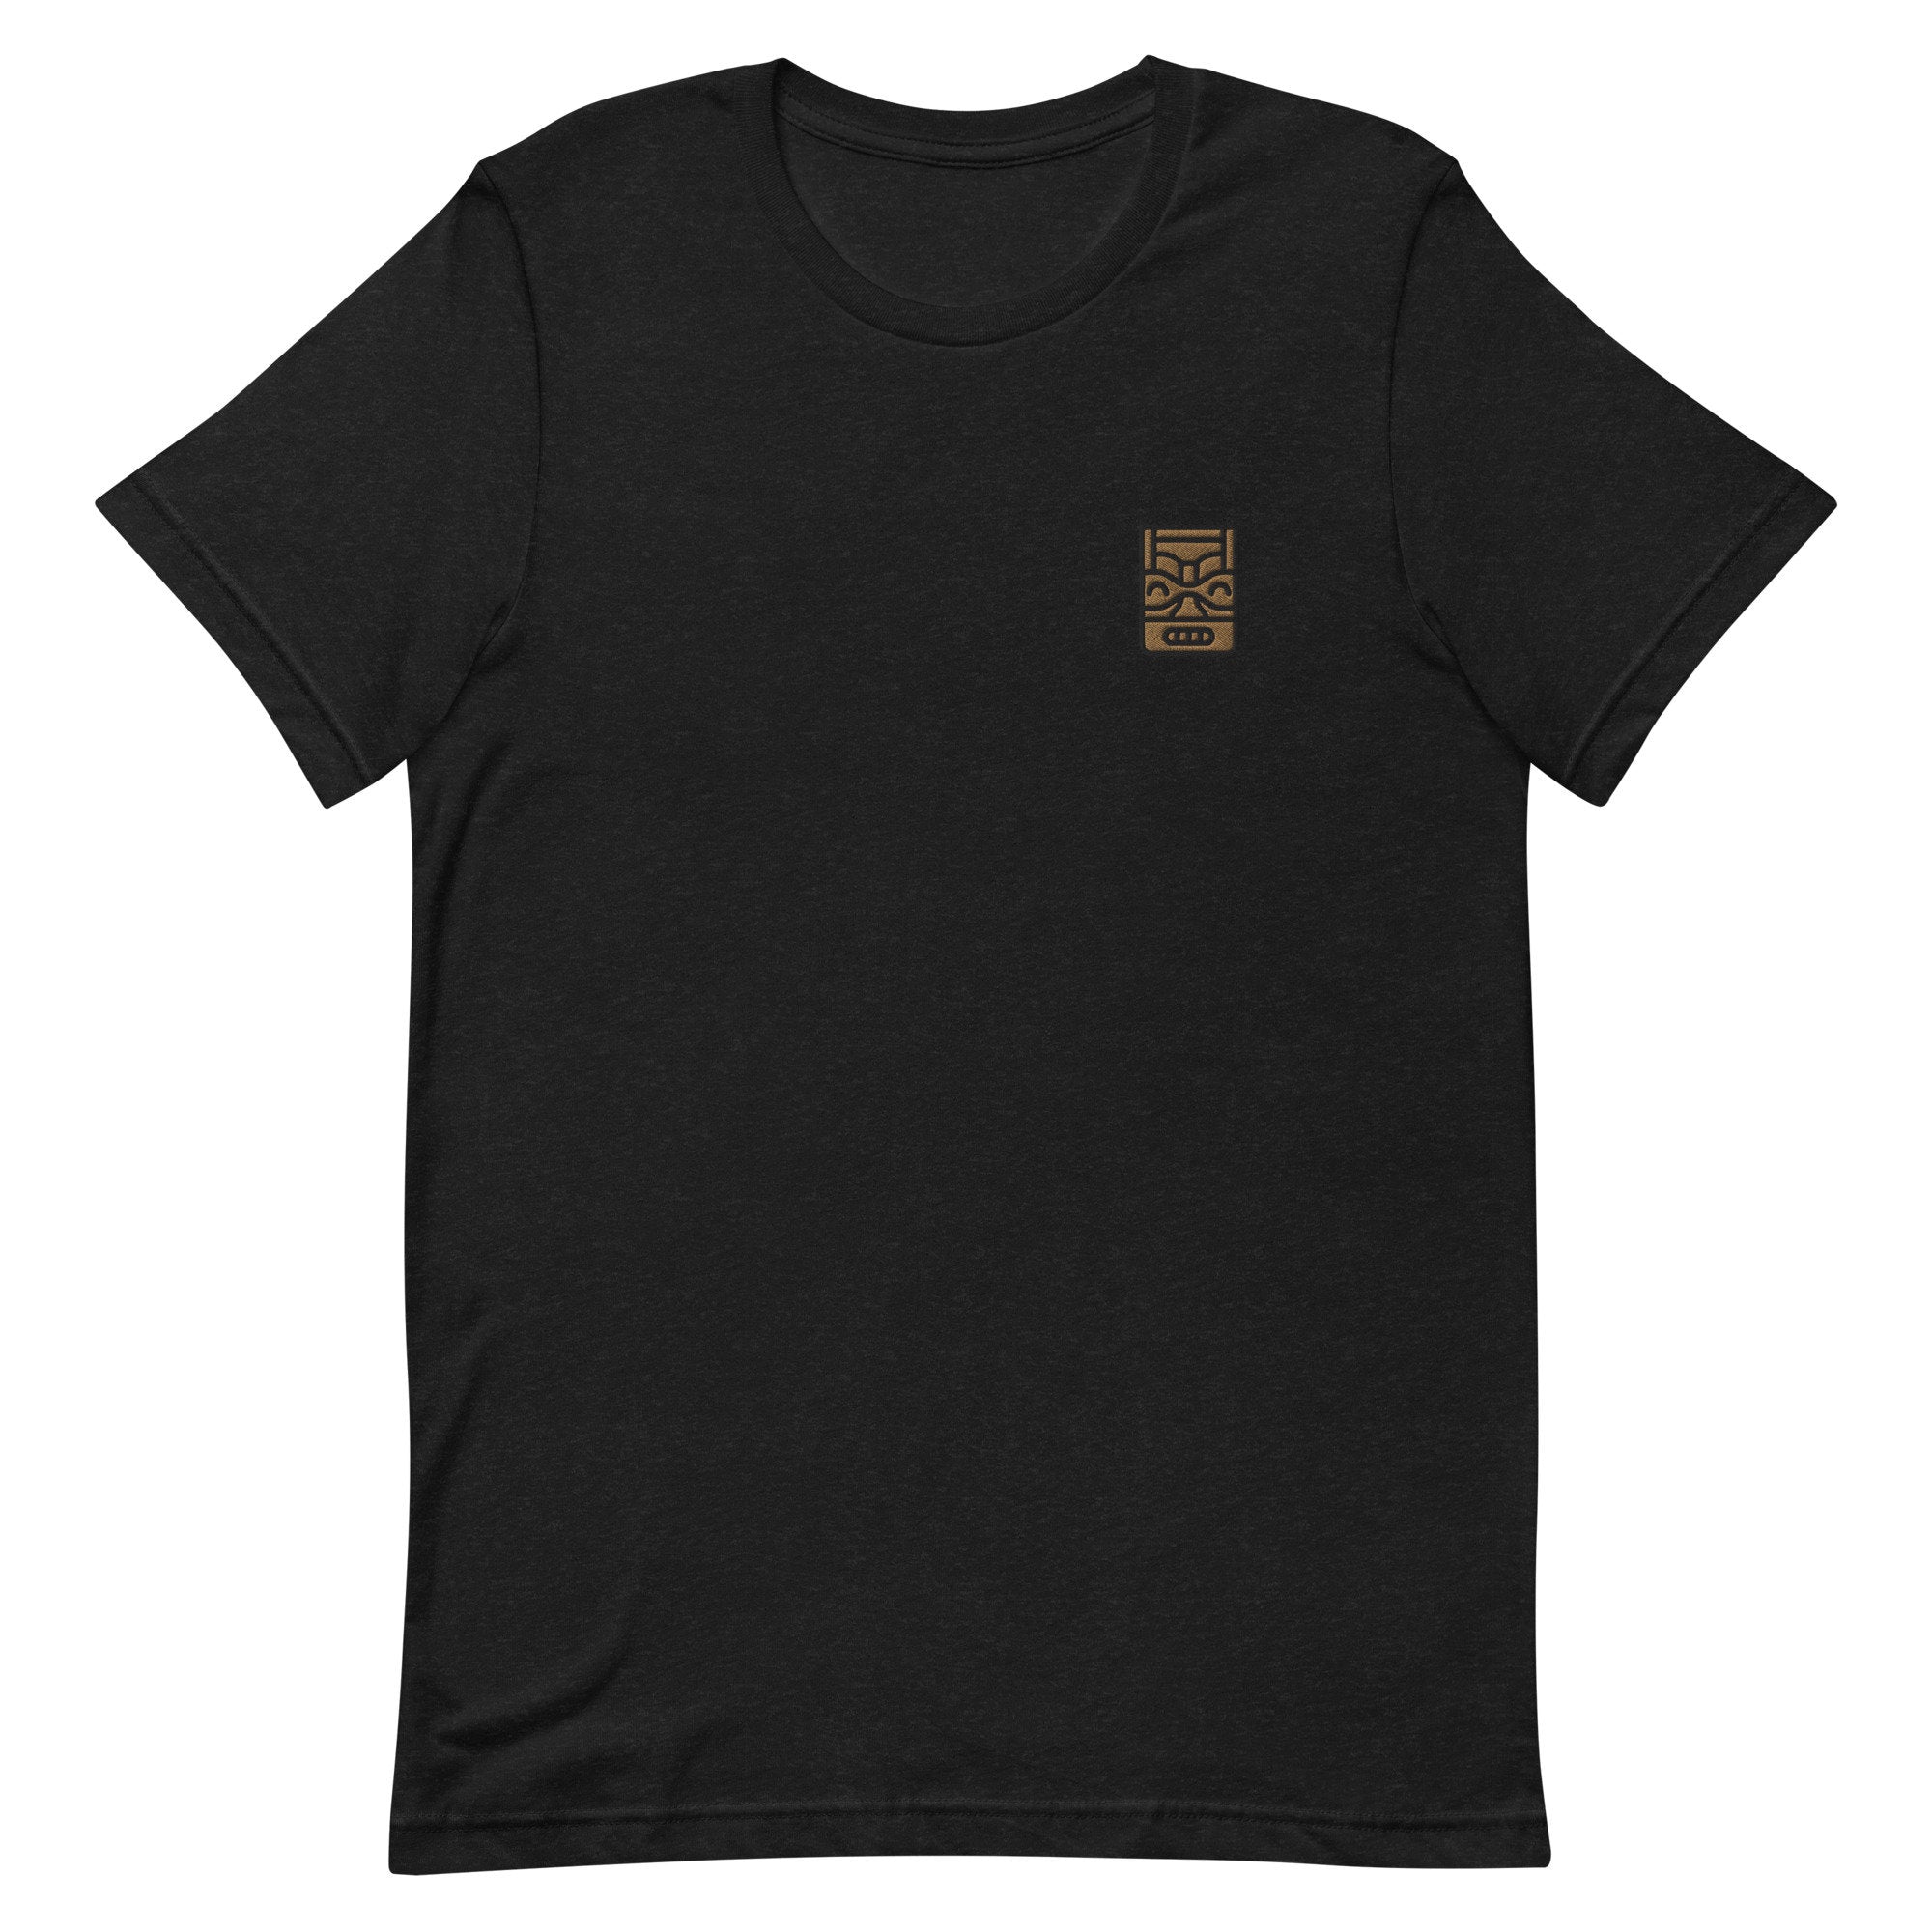 Tiki Premium Men's T-Shirt, Embroidered Men's T-Shirt Gift for Boyfriend, Men's Short Sleeve Shirt - Multiple Colors